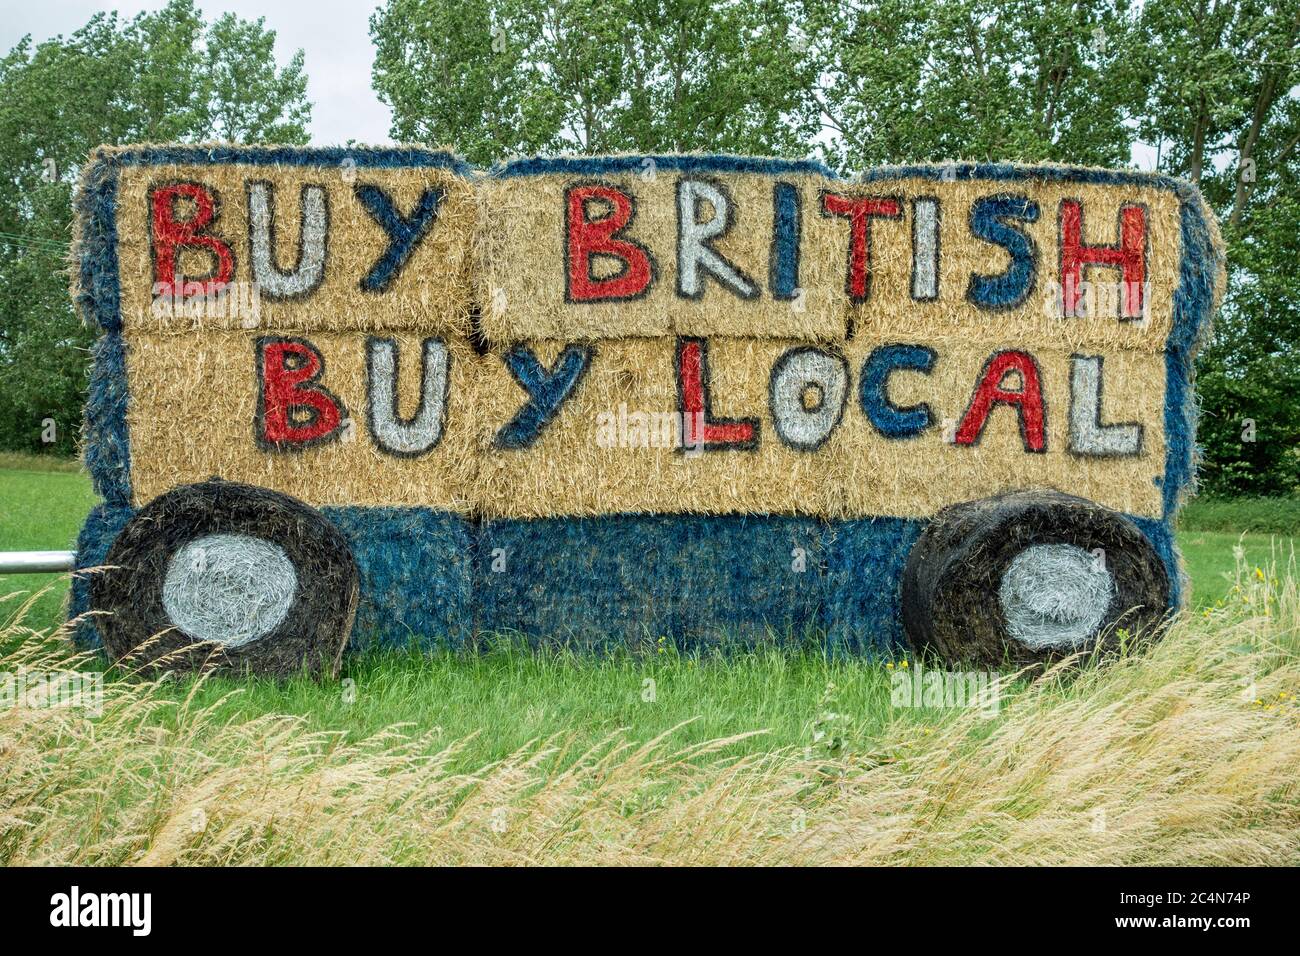 Acquista British acquistare slogan locale dipinto su lato di balle di paglia, Cambridgeshire, Inghilterra Foto Stock